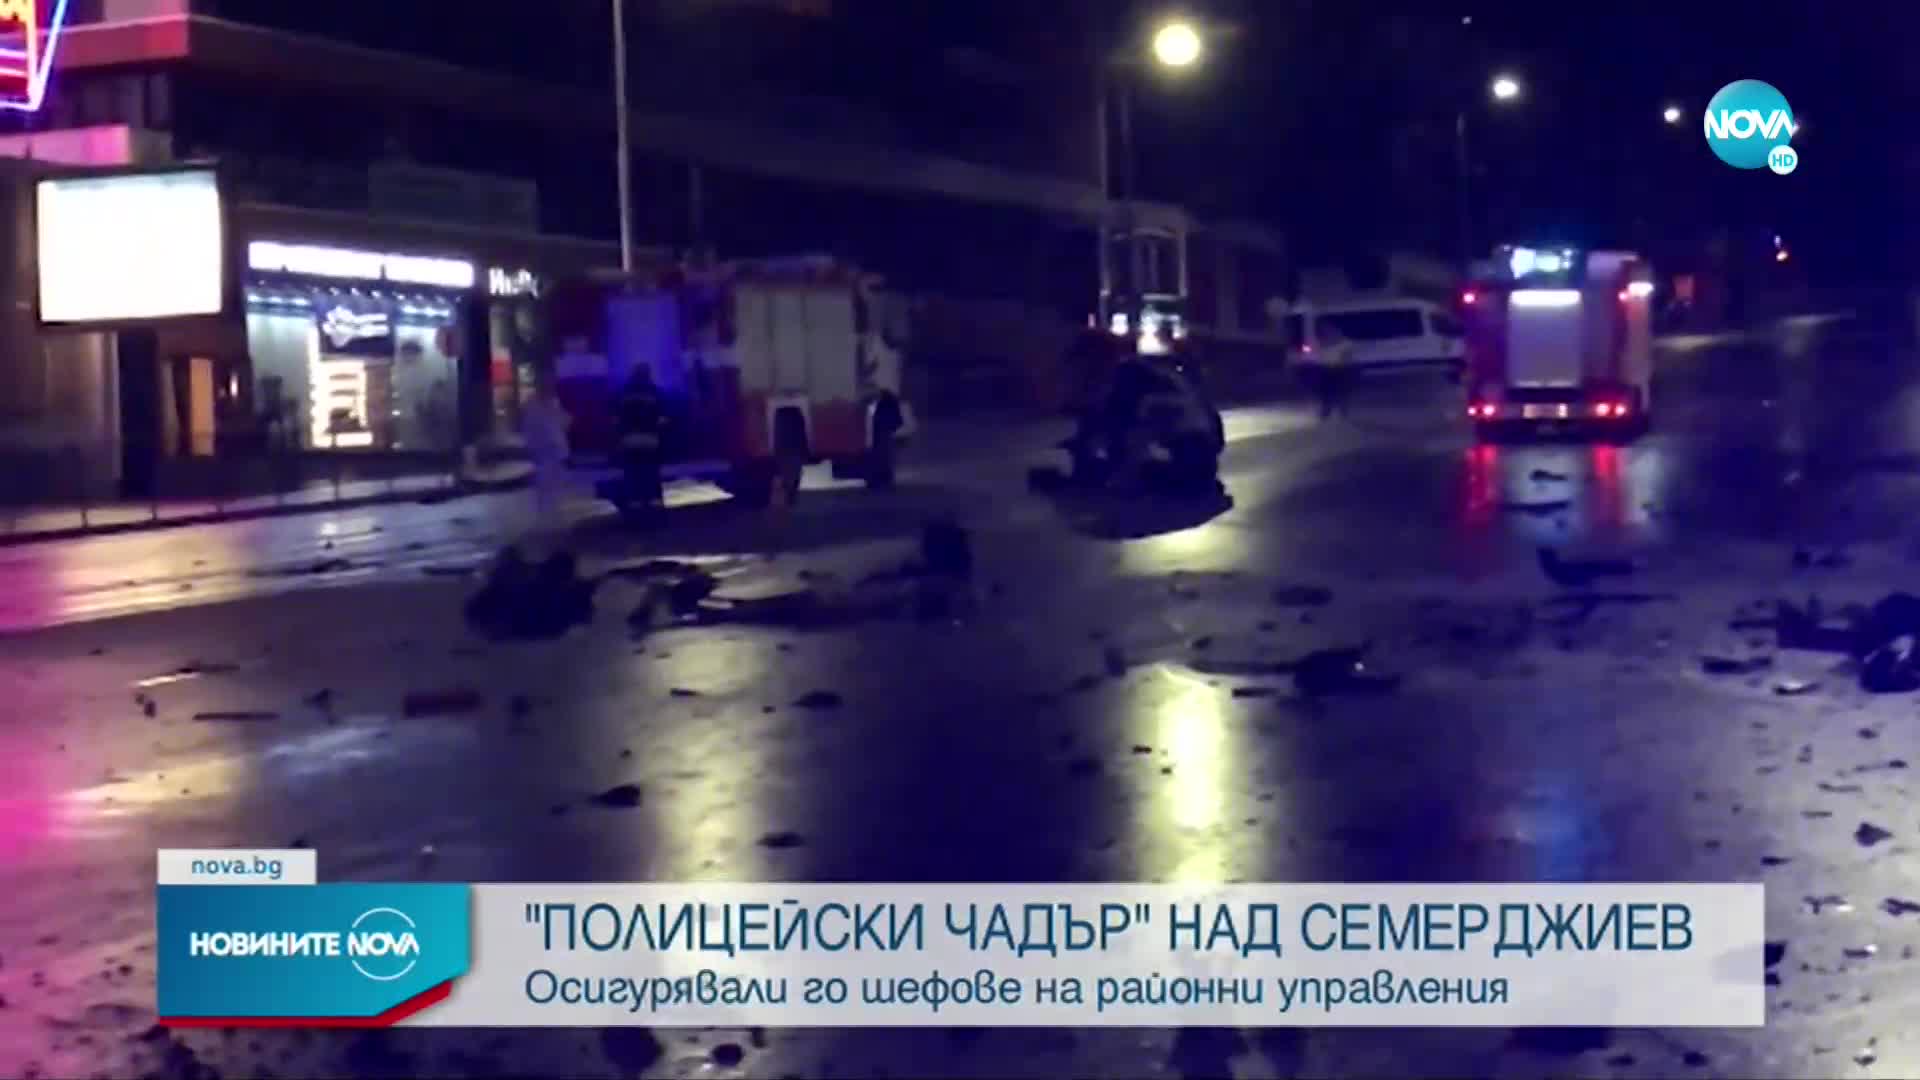 Четирима полицейски шефове осигурявали „чадър” над Семерджиев